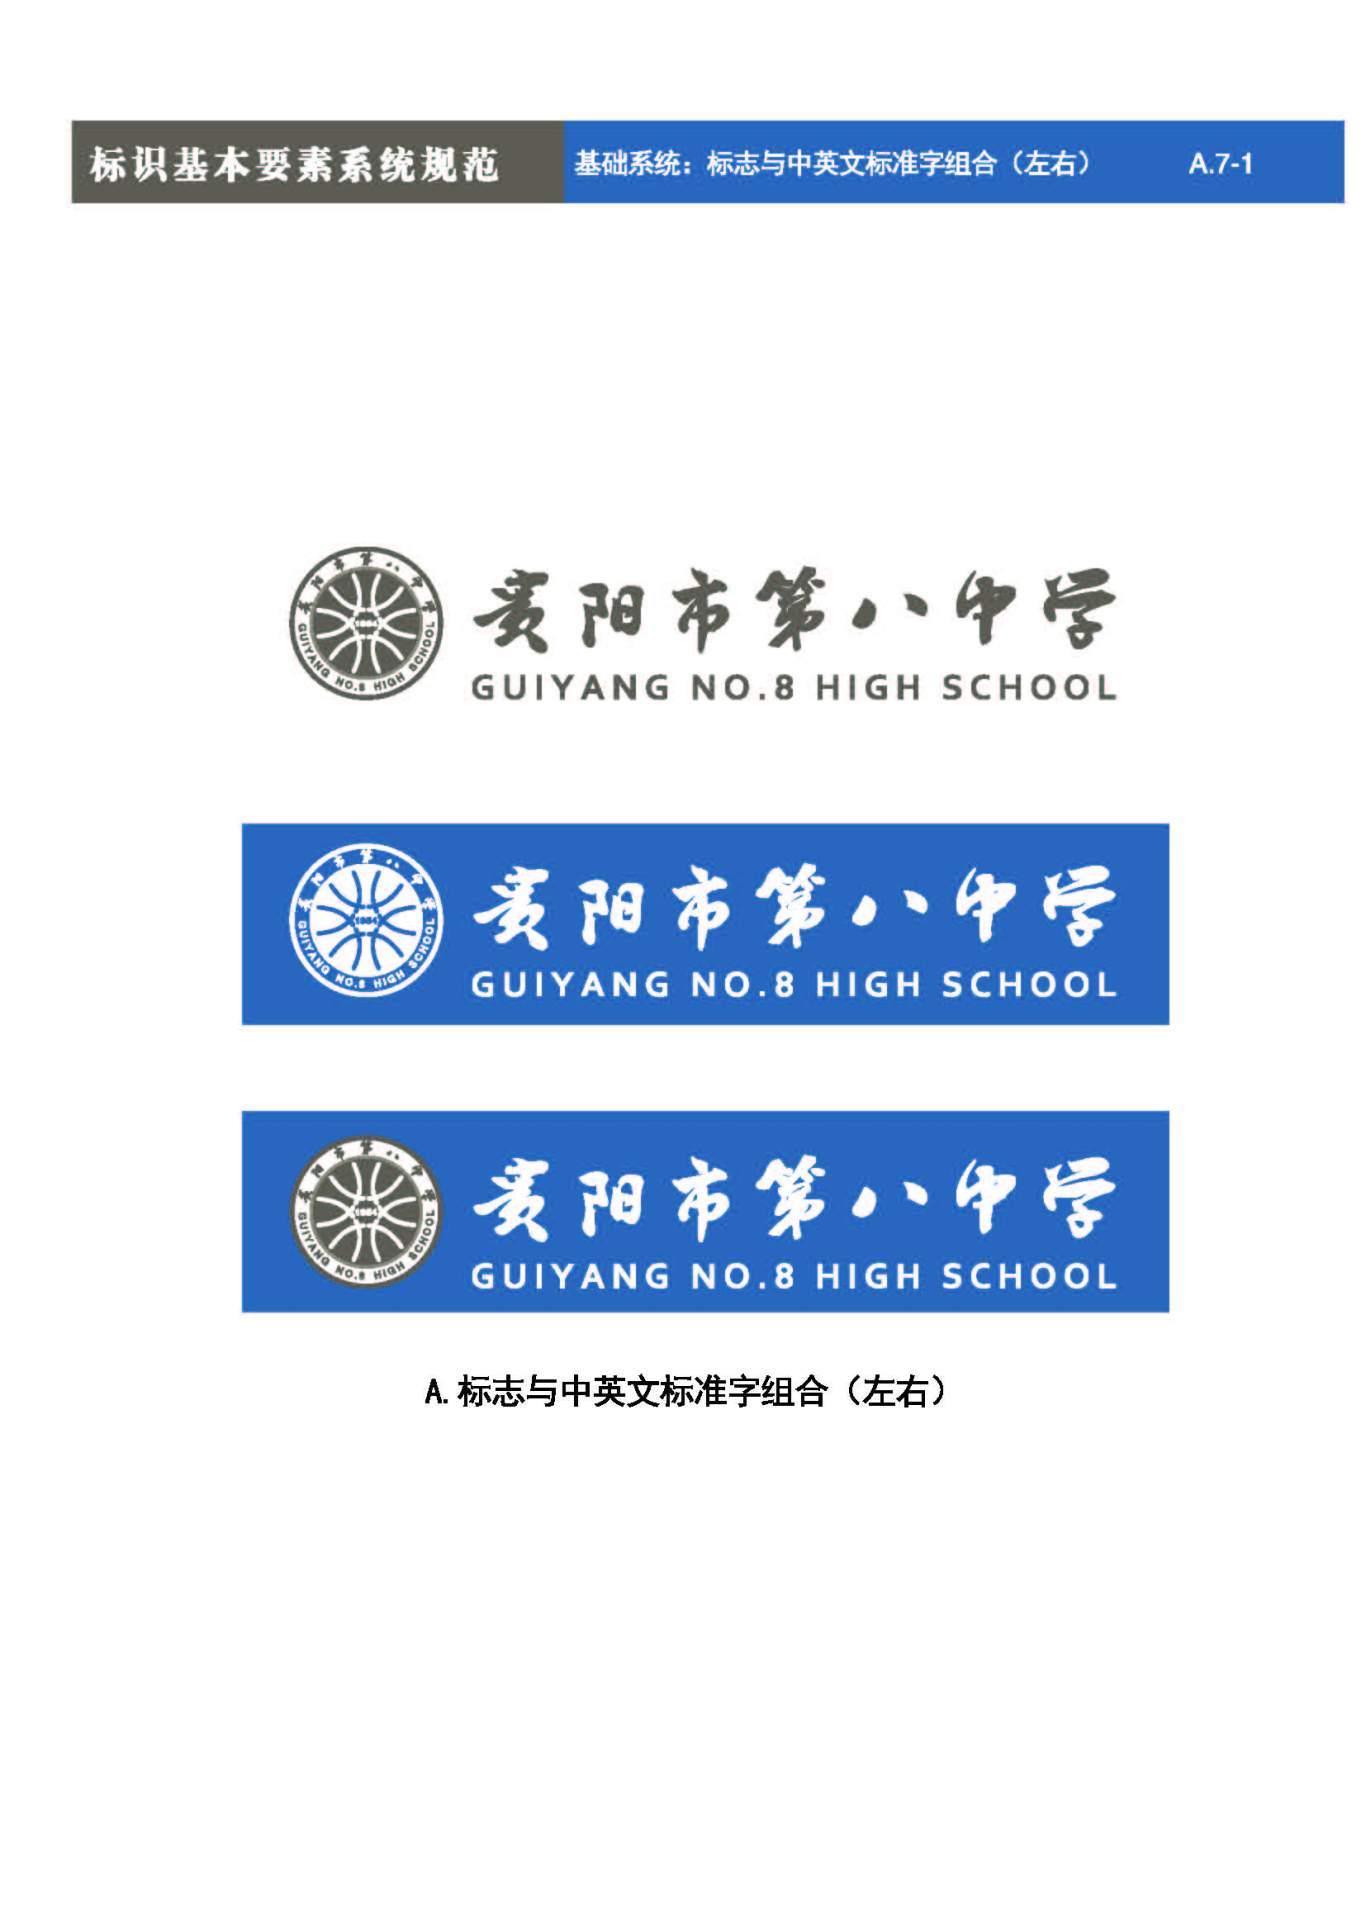 貴陽第八中學Logo、VIS設計圖22